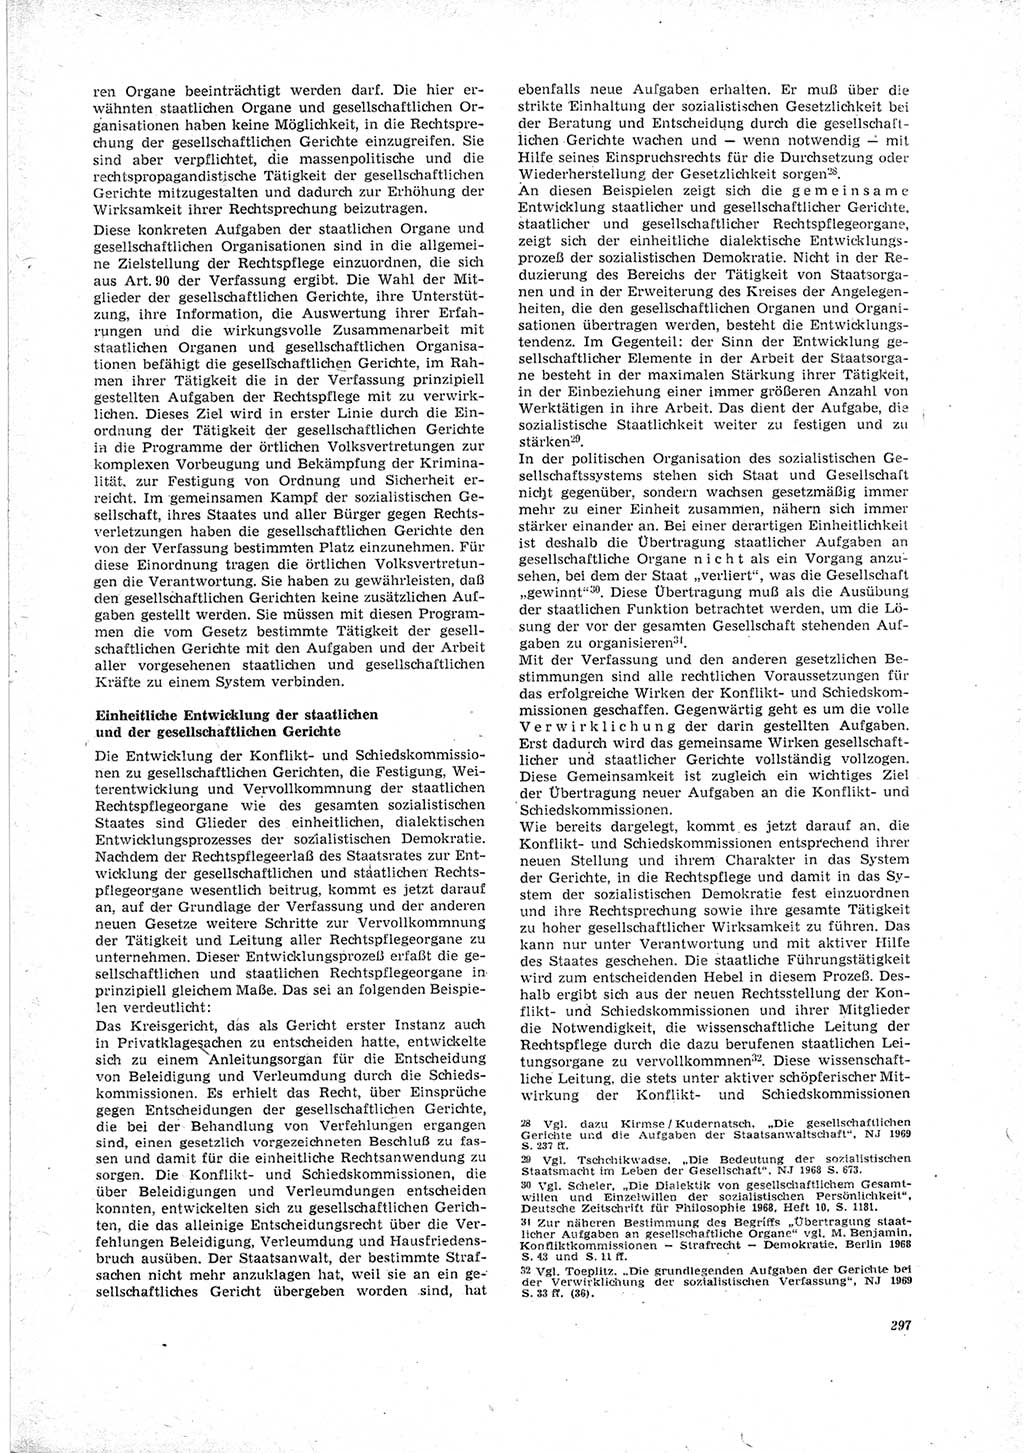 Neue Justiz (NJ), Zeitschrift für Recht und Rechtswissenschaft [Deutsche Demokratische Republik (DDR)], 23. Jahrgang 1969, Seite 297 (NJ DDR 1969, S. 297)